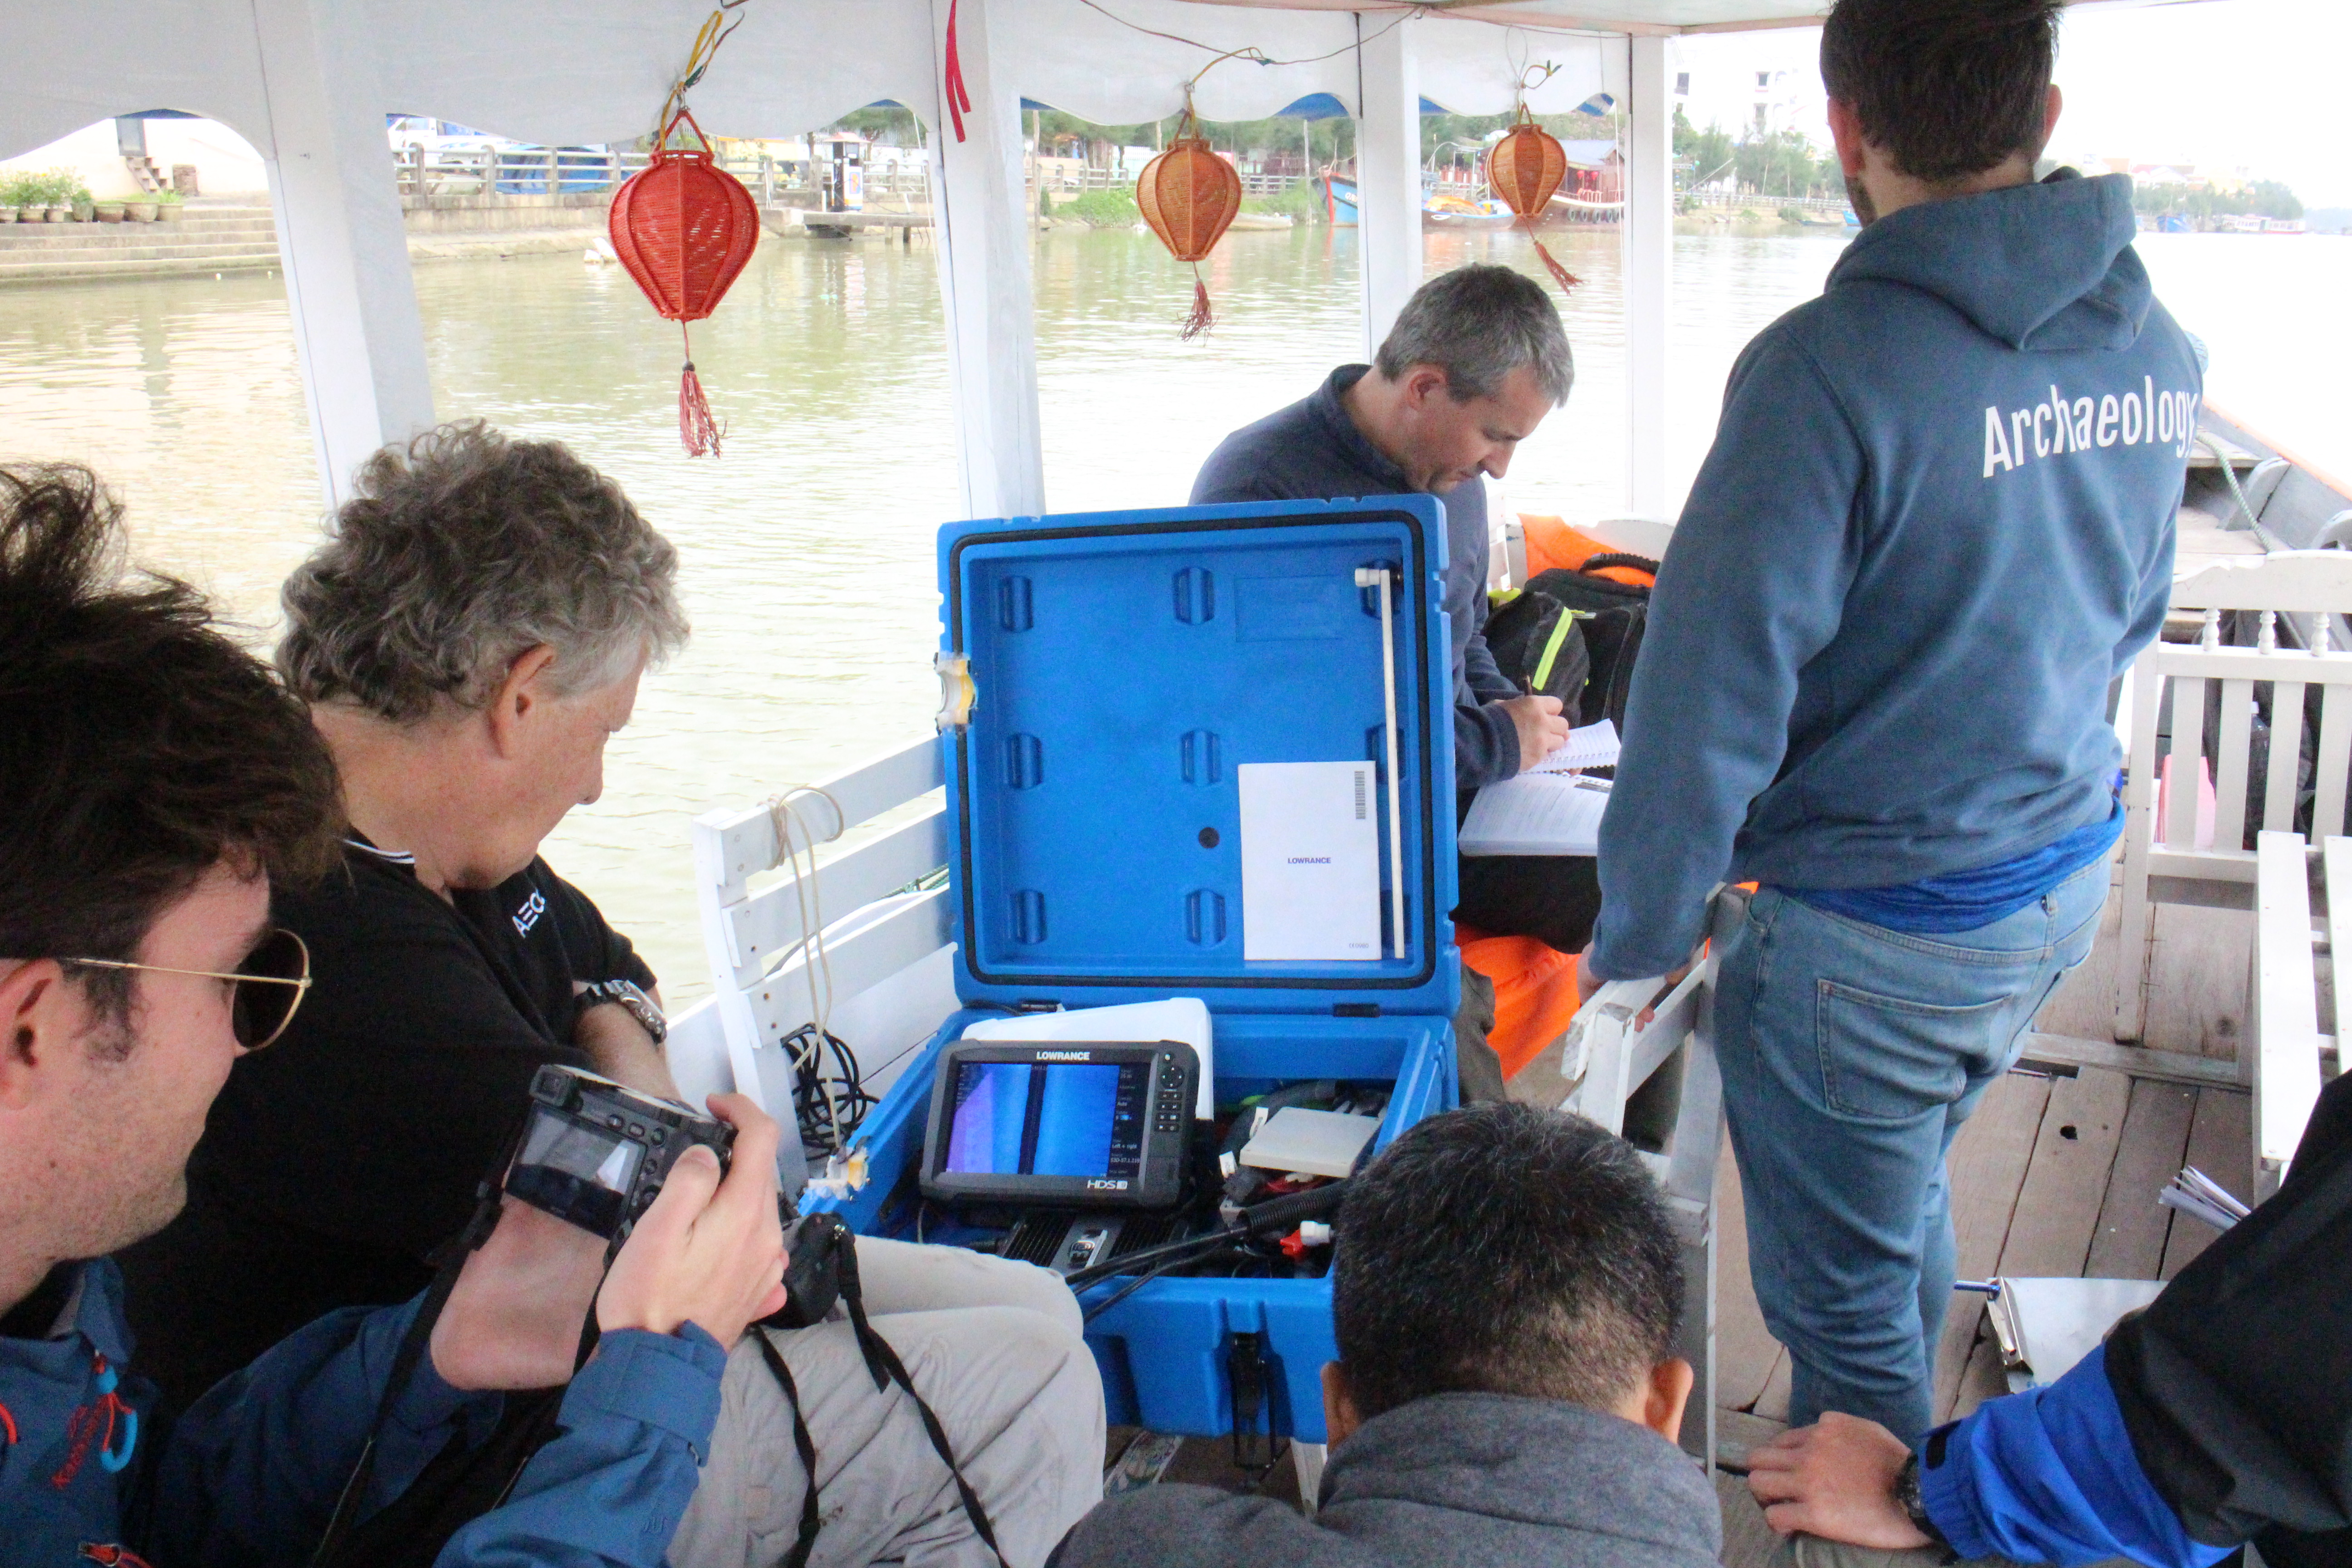 รายงานการเดินทางไปราชการ ณ สาธารณรัฐสังคมนิยมเวียดนาม ระหว่างวันที่ 27 มกราคม – 11 กุมภาพันธ์ โครงการฝึกอบรมโบราณคดีใต้น้ำภาคพื้นดินและใต้น้ำ (VMAP)